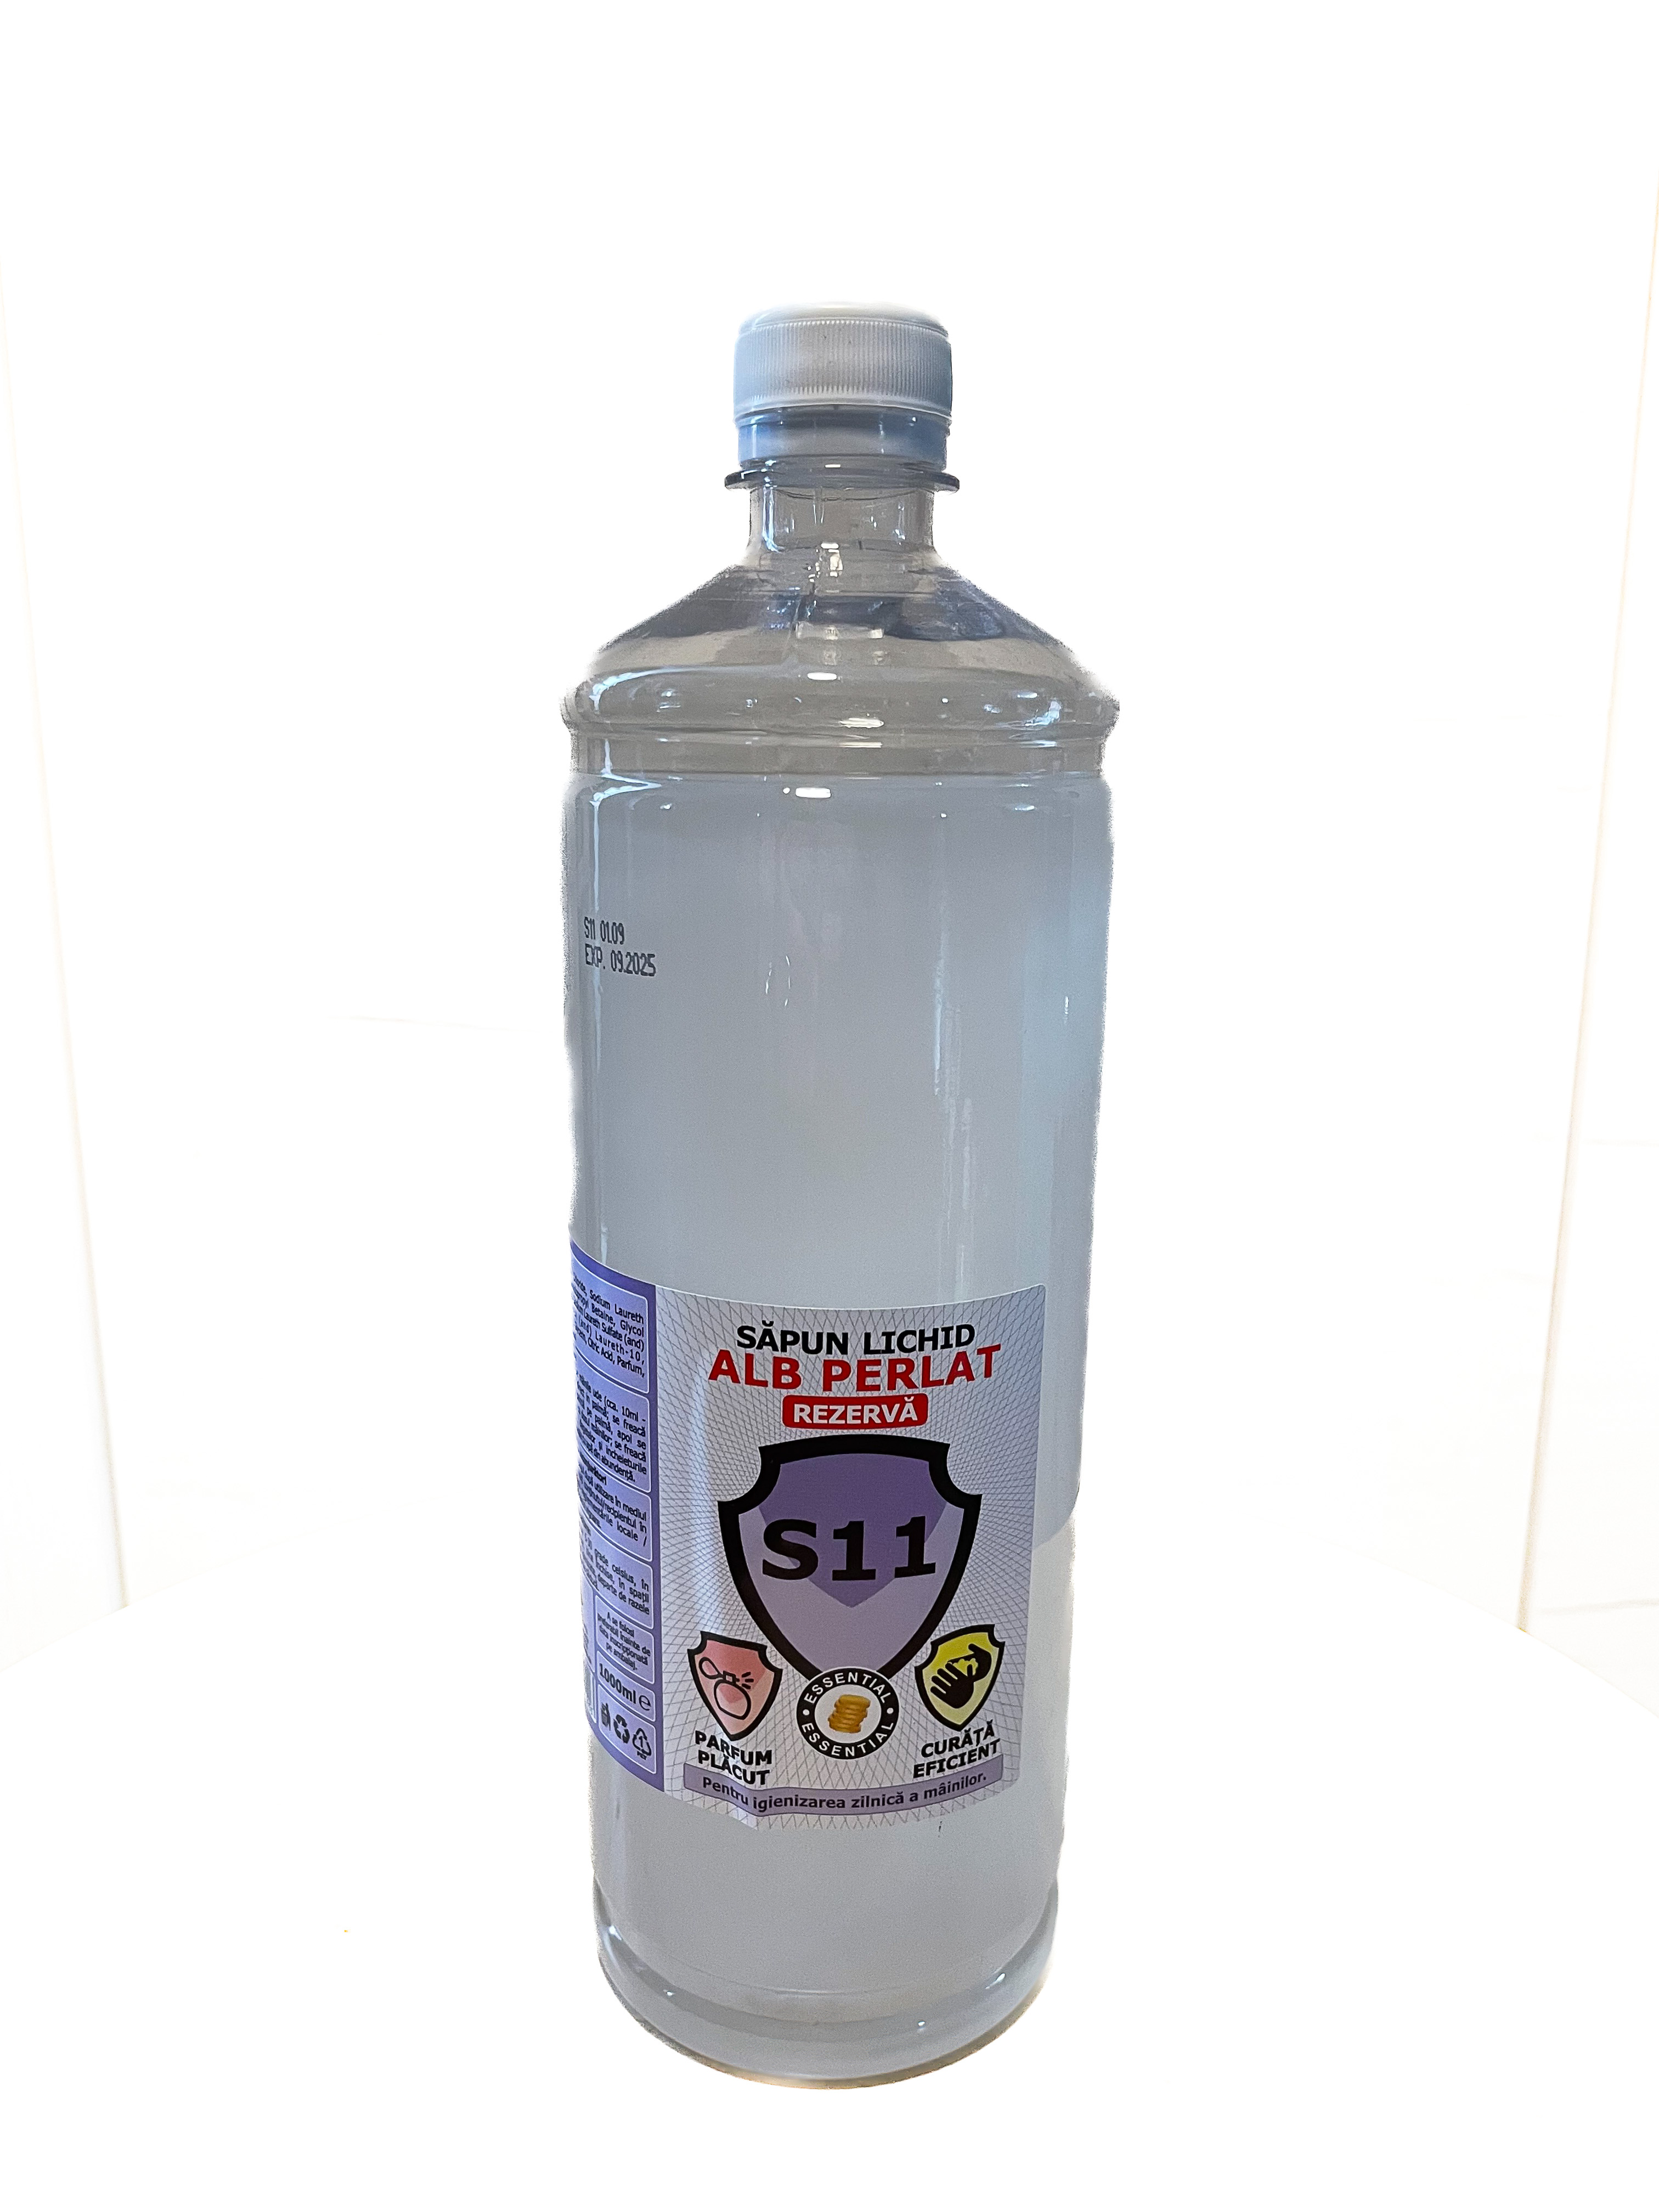 Sapun lichid Essential S11 ALB PERLAT in flacon PET cu dop PCO 1000ml [1 LITRU]